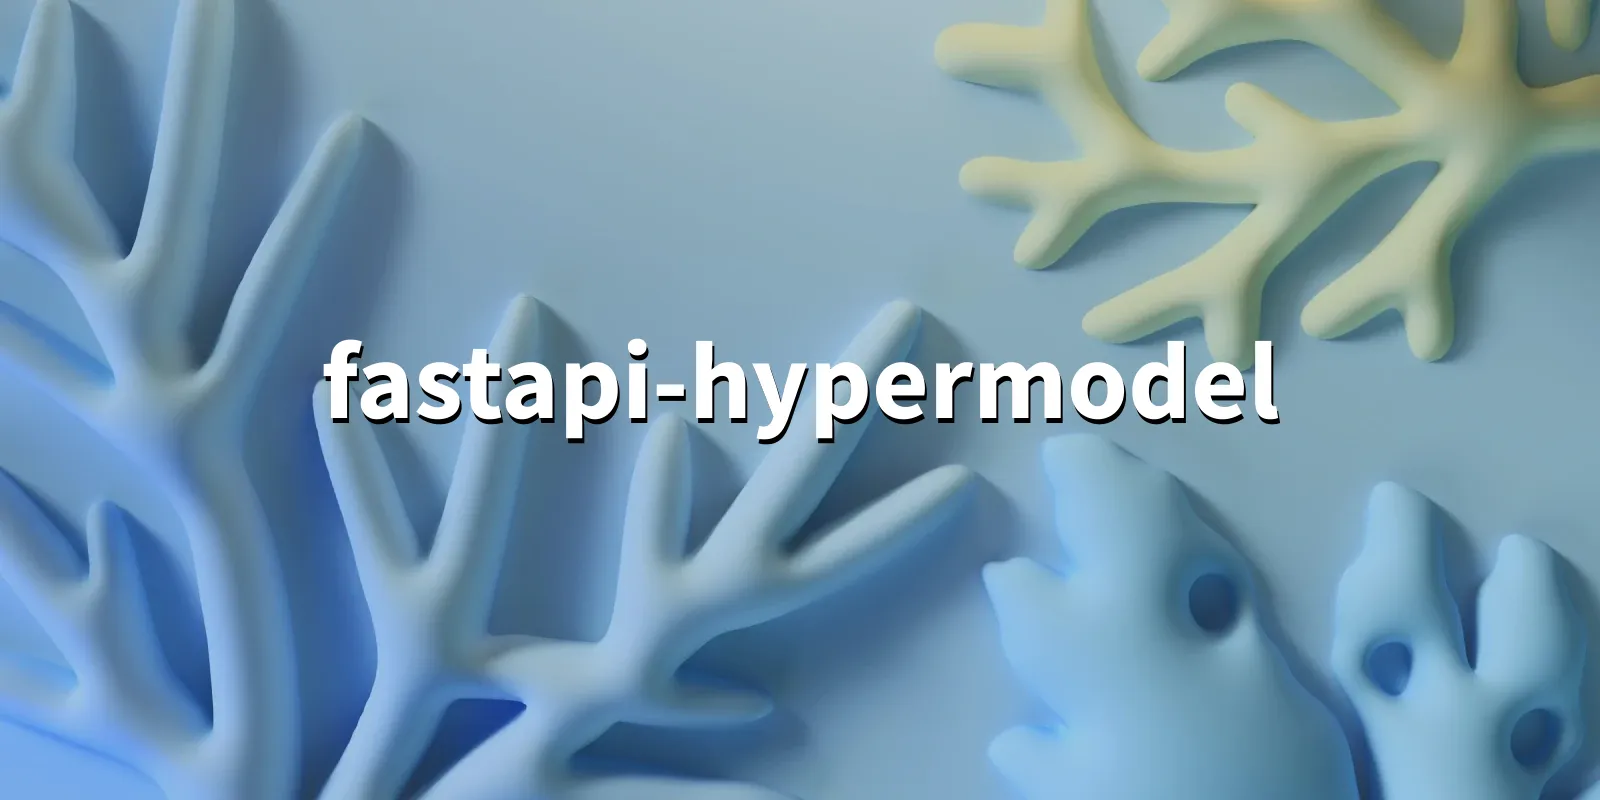 /pkg/f/fastapi-hypermodel/fastapi-hypermodel-banner.webp